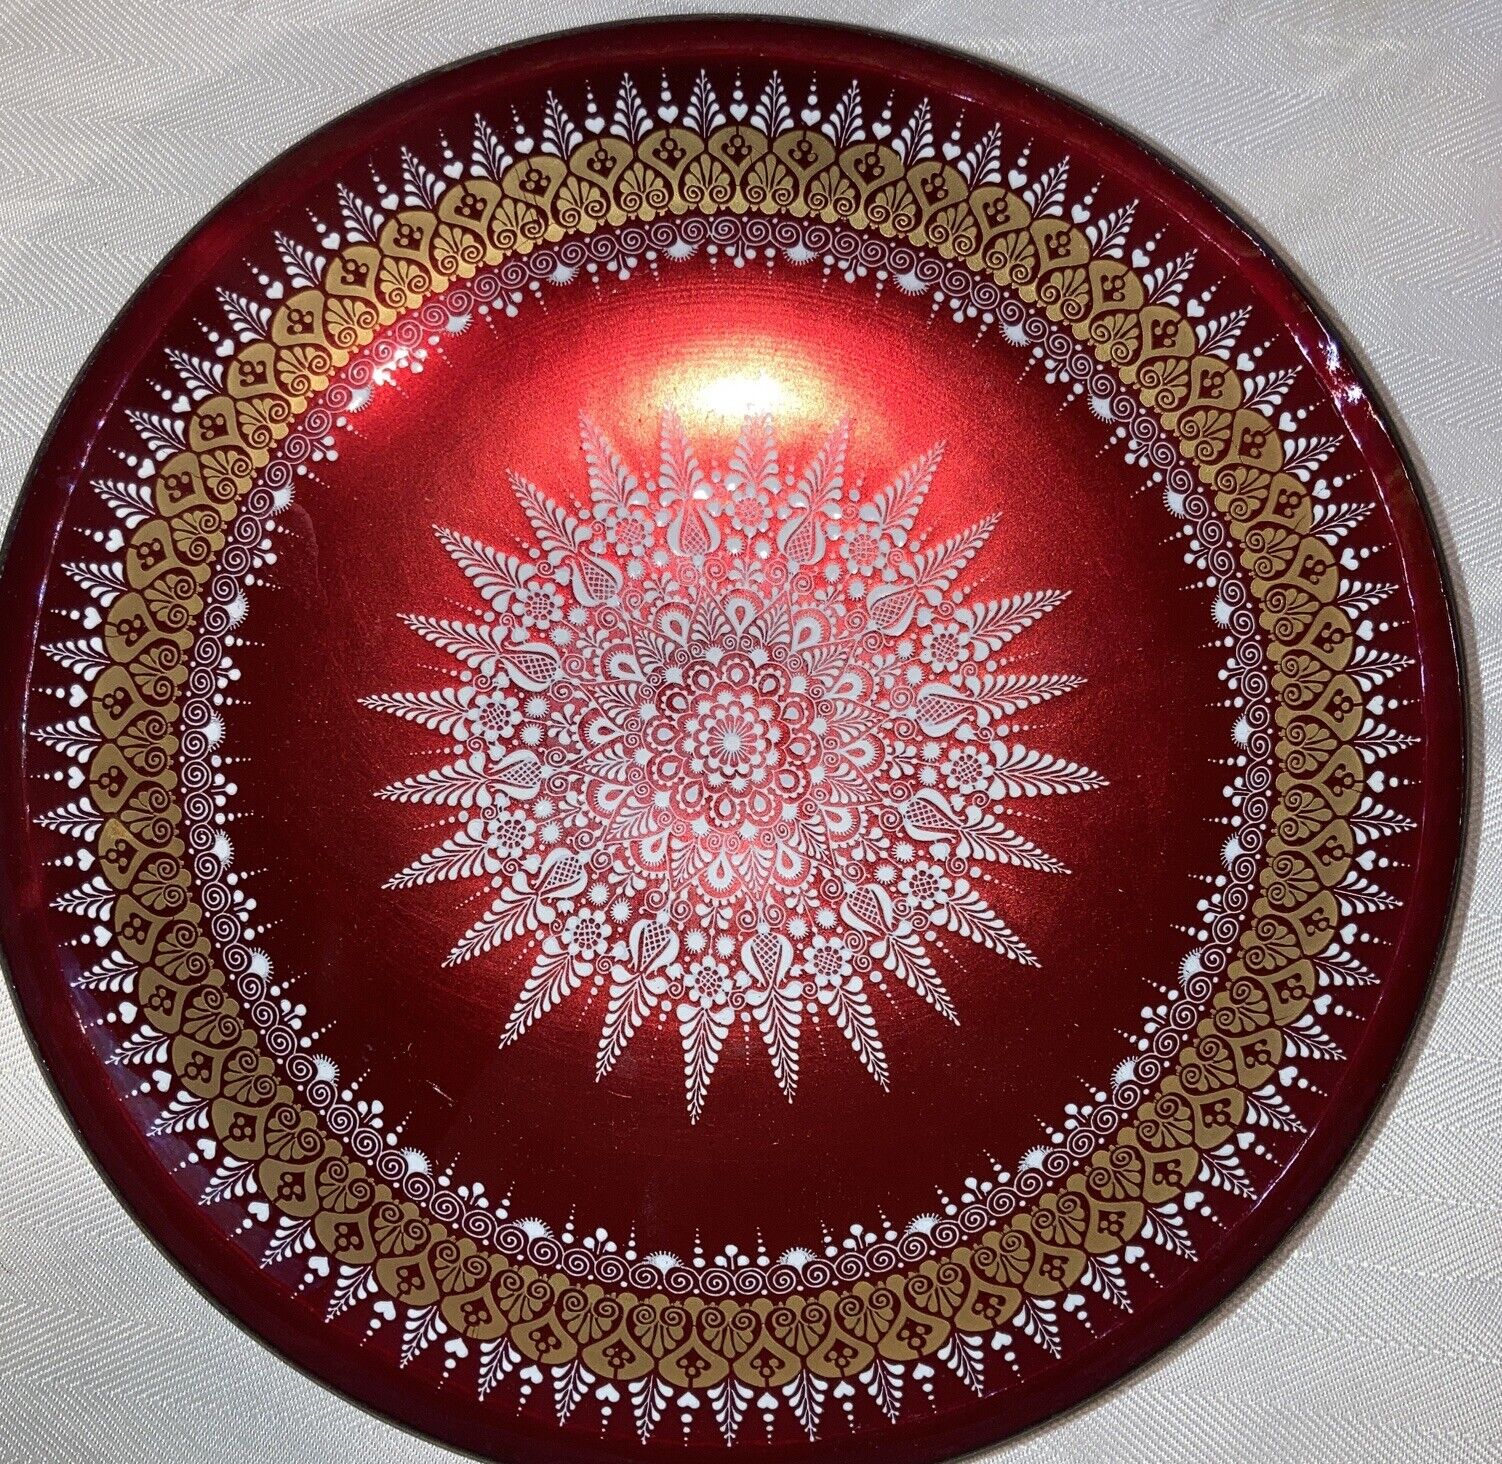 Steinbock Enamel Austria Brass Bowl Handmade in Stunning Red White & Gold 9”